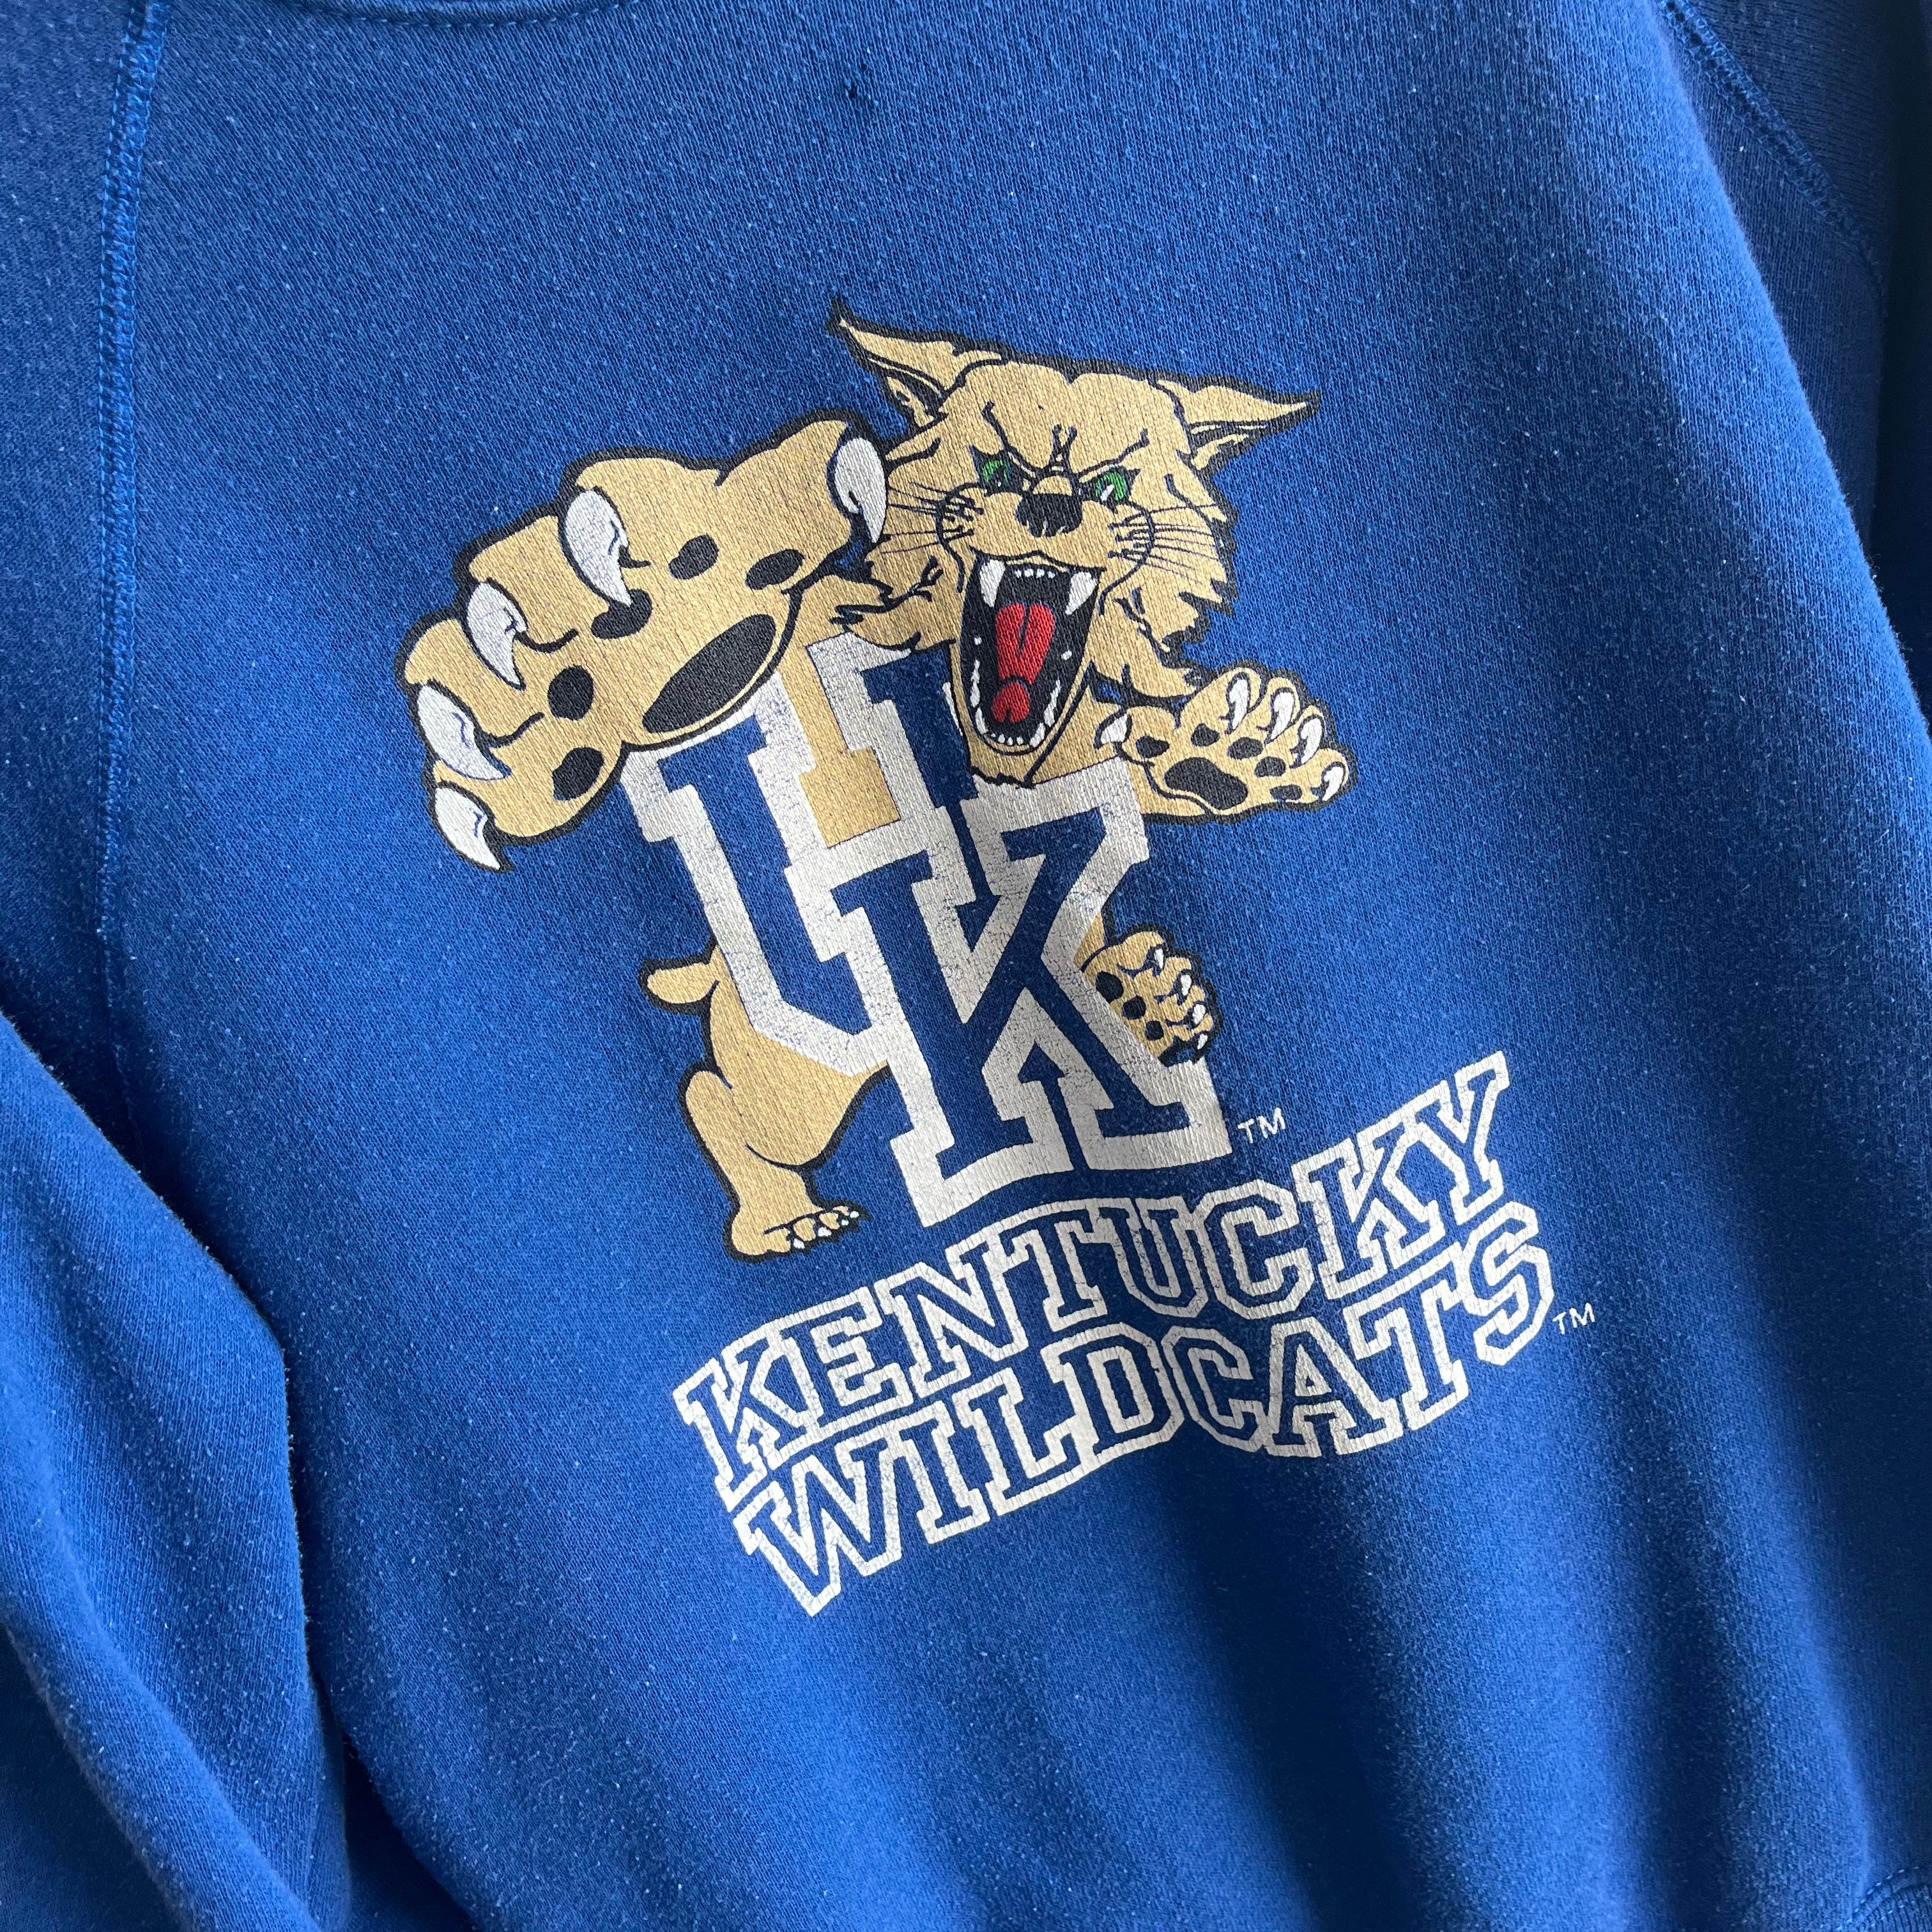 1980s Kentucky Wildcats Sweatshirt